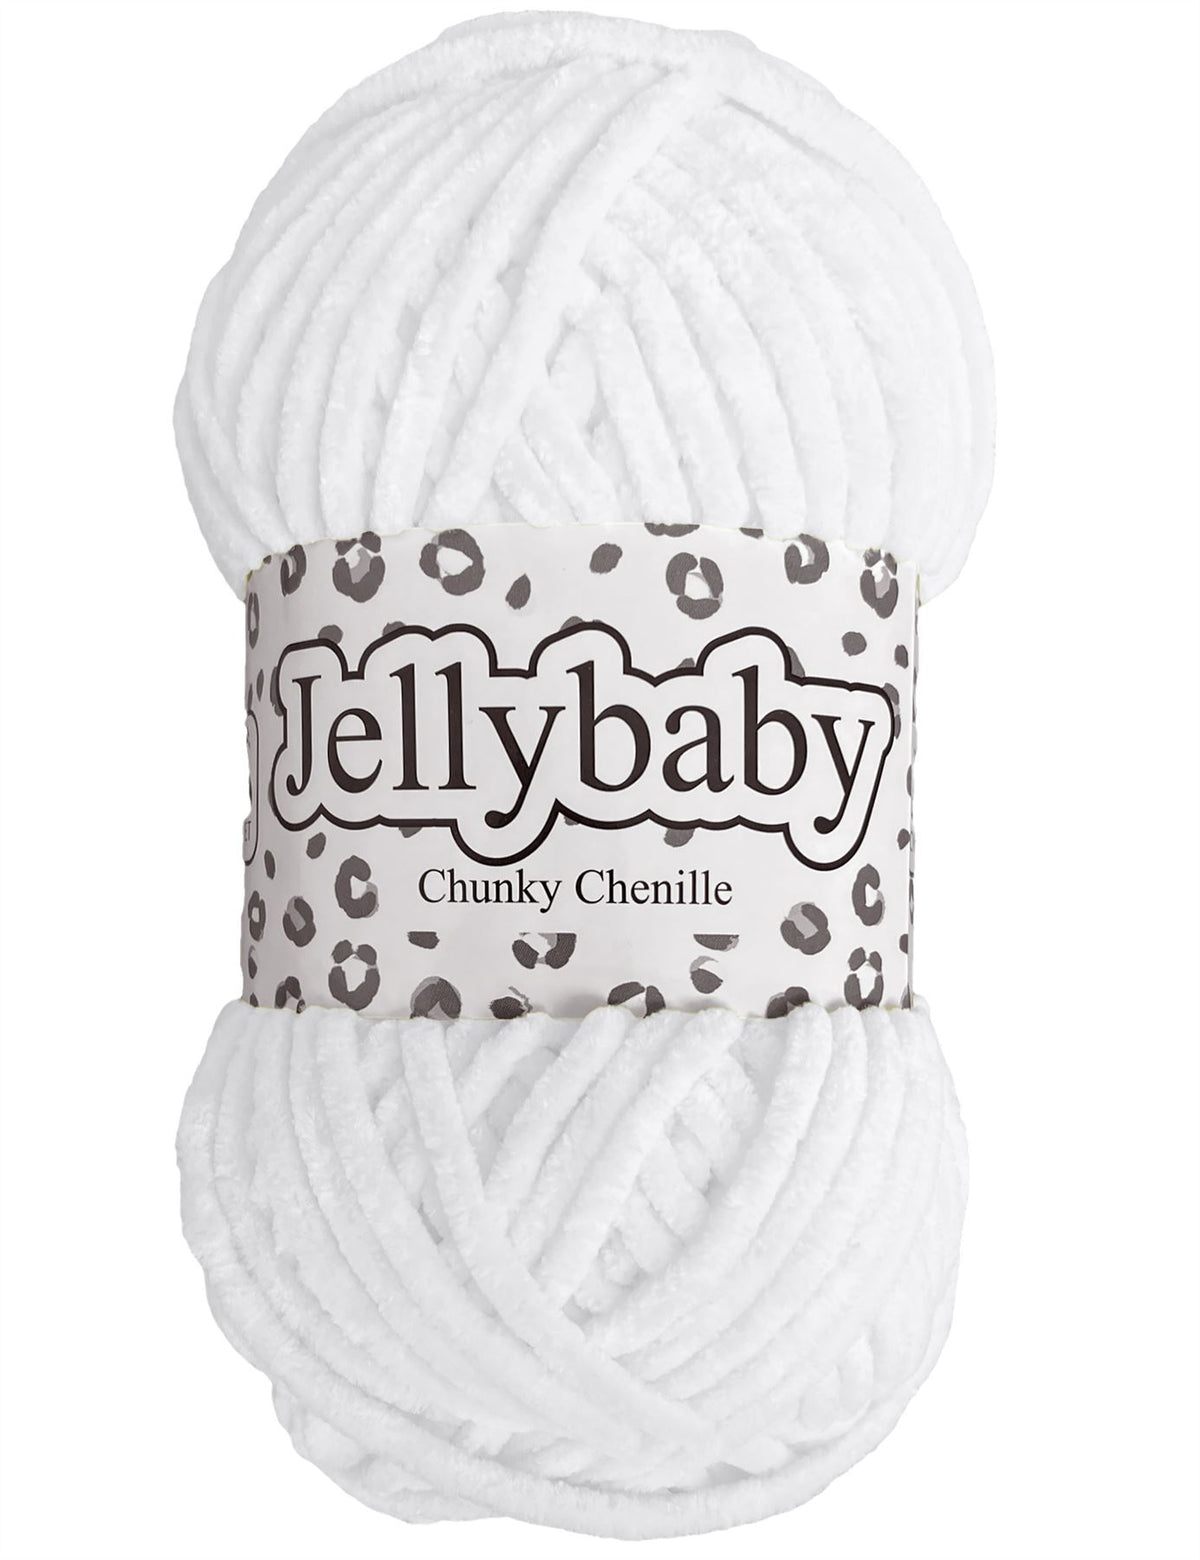 Cygnet Jellybaby Chenille Chunky White (001) -100g